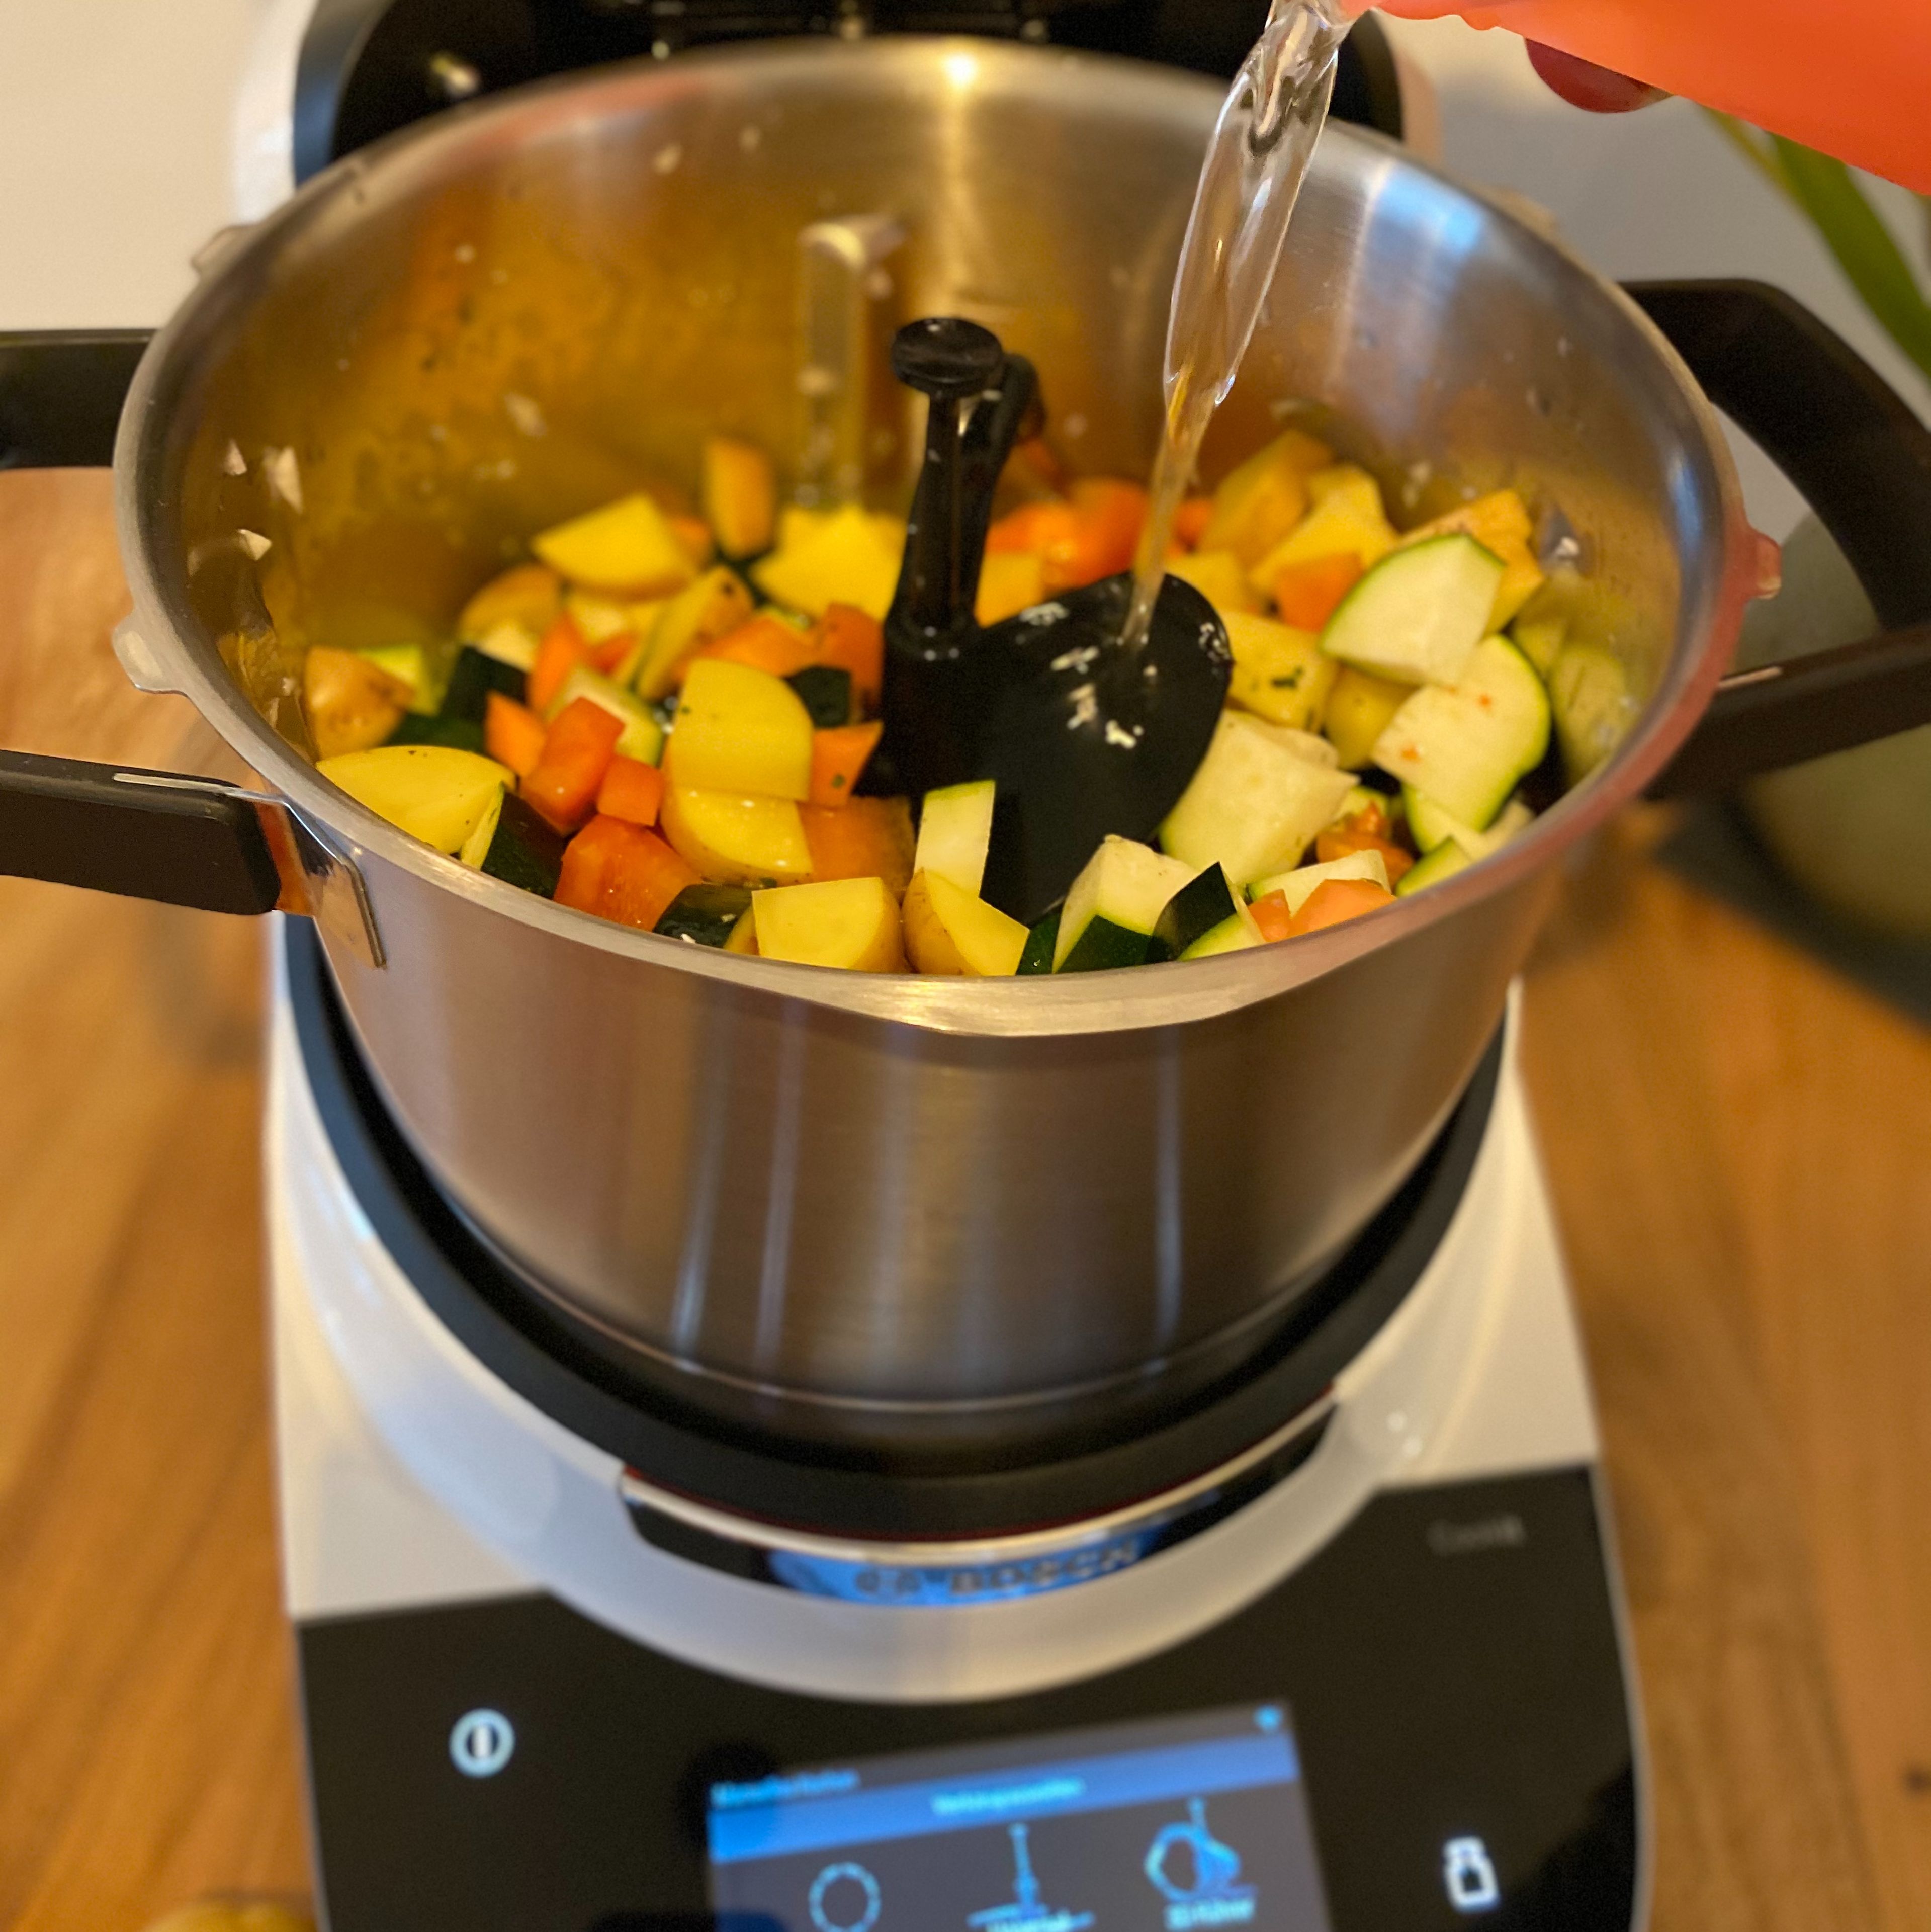 Das Gemüse, bis auf die Tomaten, zu der Zwiebel und dem Knoblauch geben. Alles mit reichlich Gemüsebrühe auffüllen und je nach Größe des Gemüses ca. 15 Minuten mit geschlossenem Deckel und eingesetztem Messbecher gar kochen lassen (3D-Rührer l Stufe 3 l 98°C l 15 Min.).